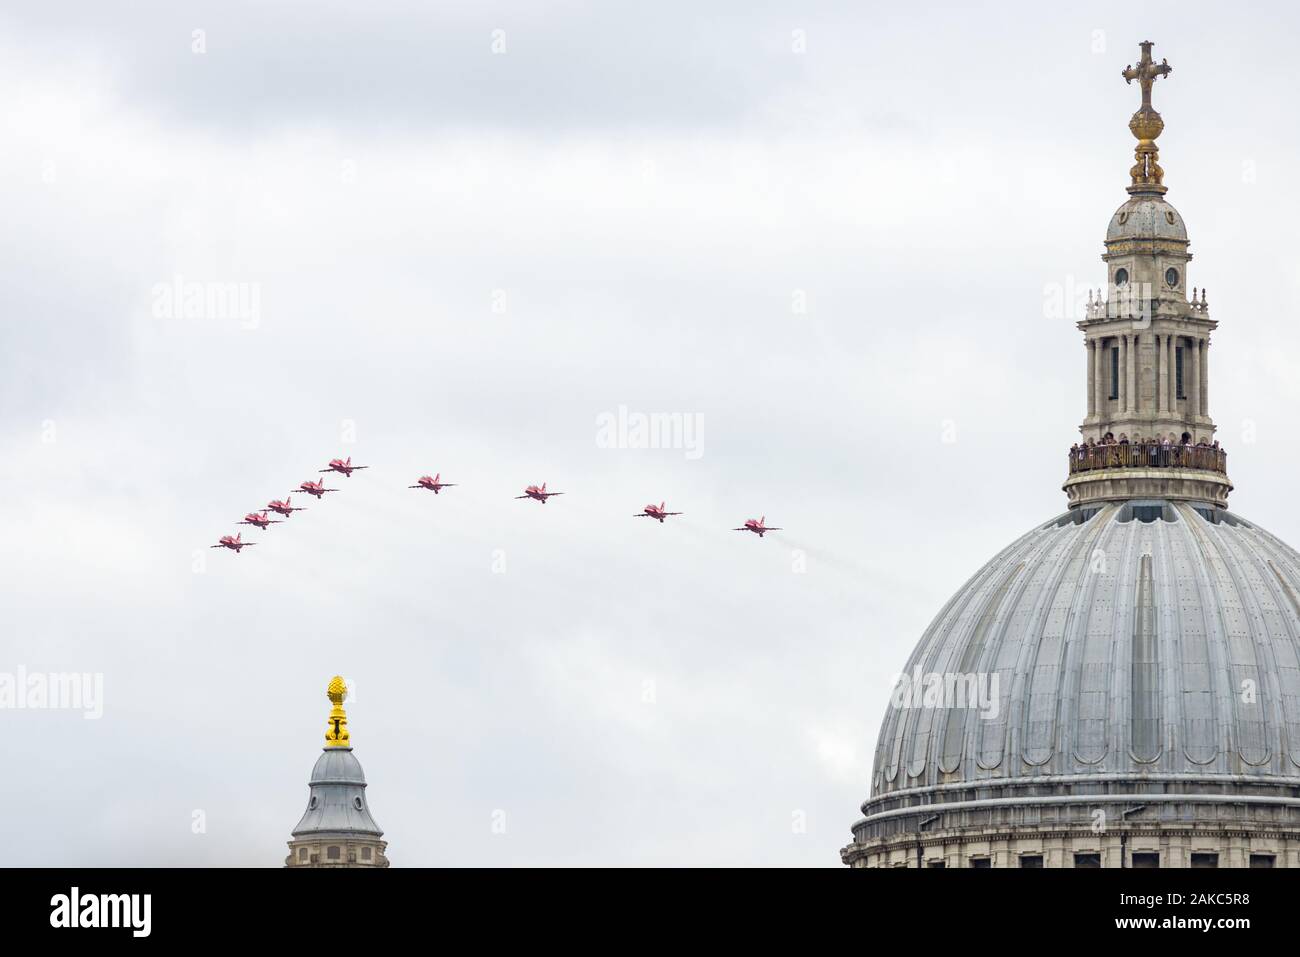 RAF frecce rosse nella formazione di visualizzazione volando sopra la cattedrale di Saint Paul sulla raf centenario, London, Regno Unito Foto Stock